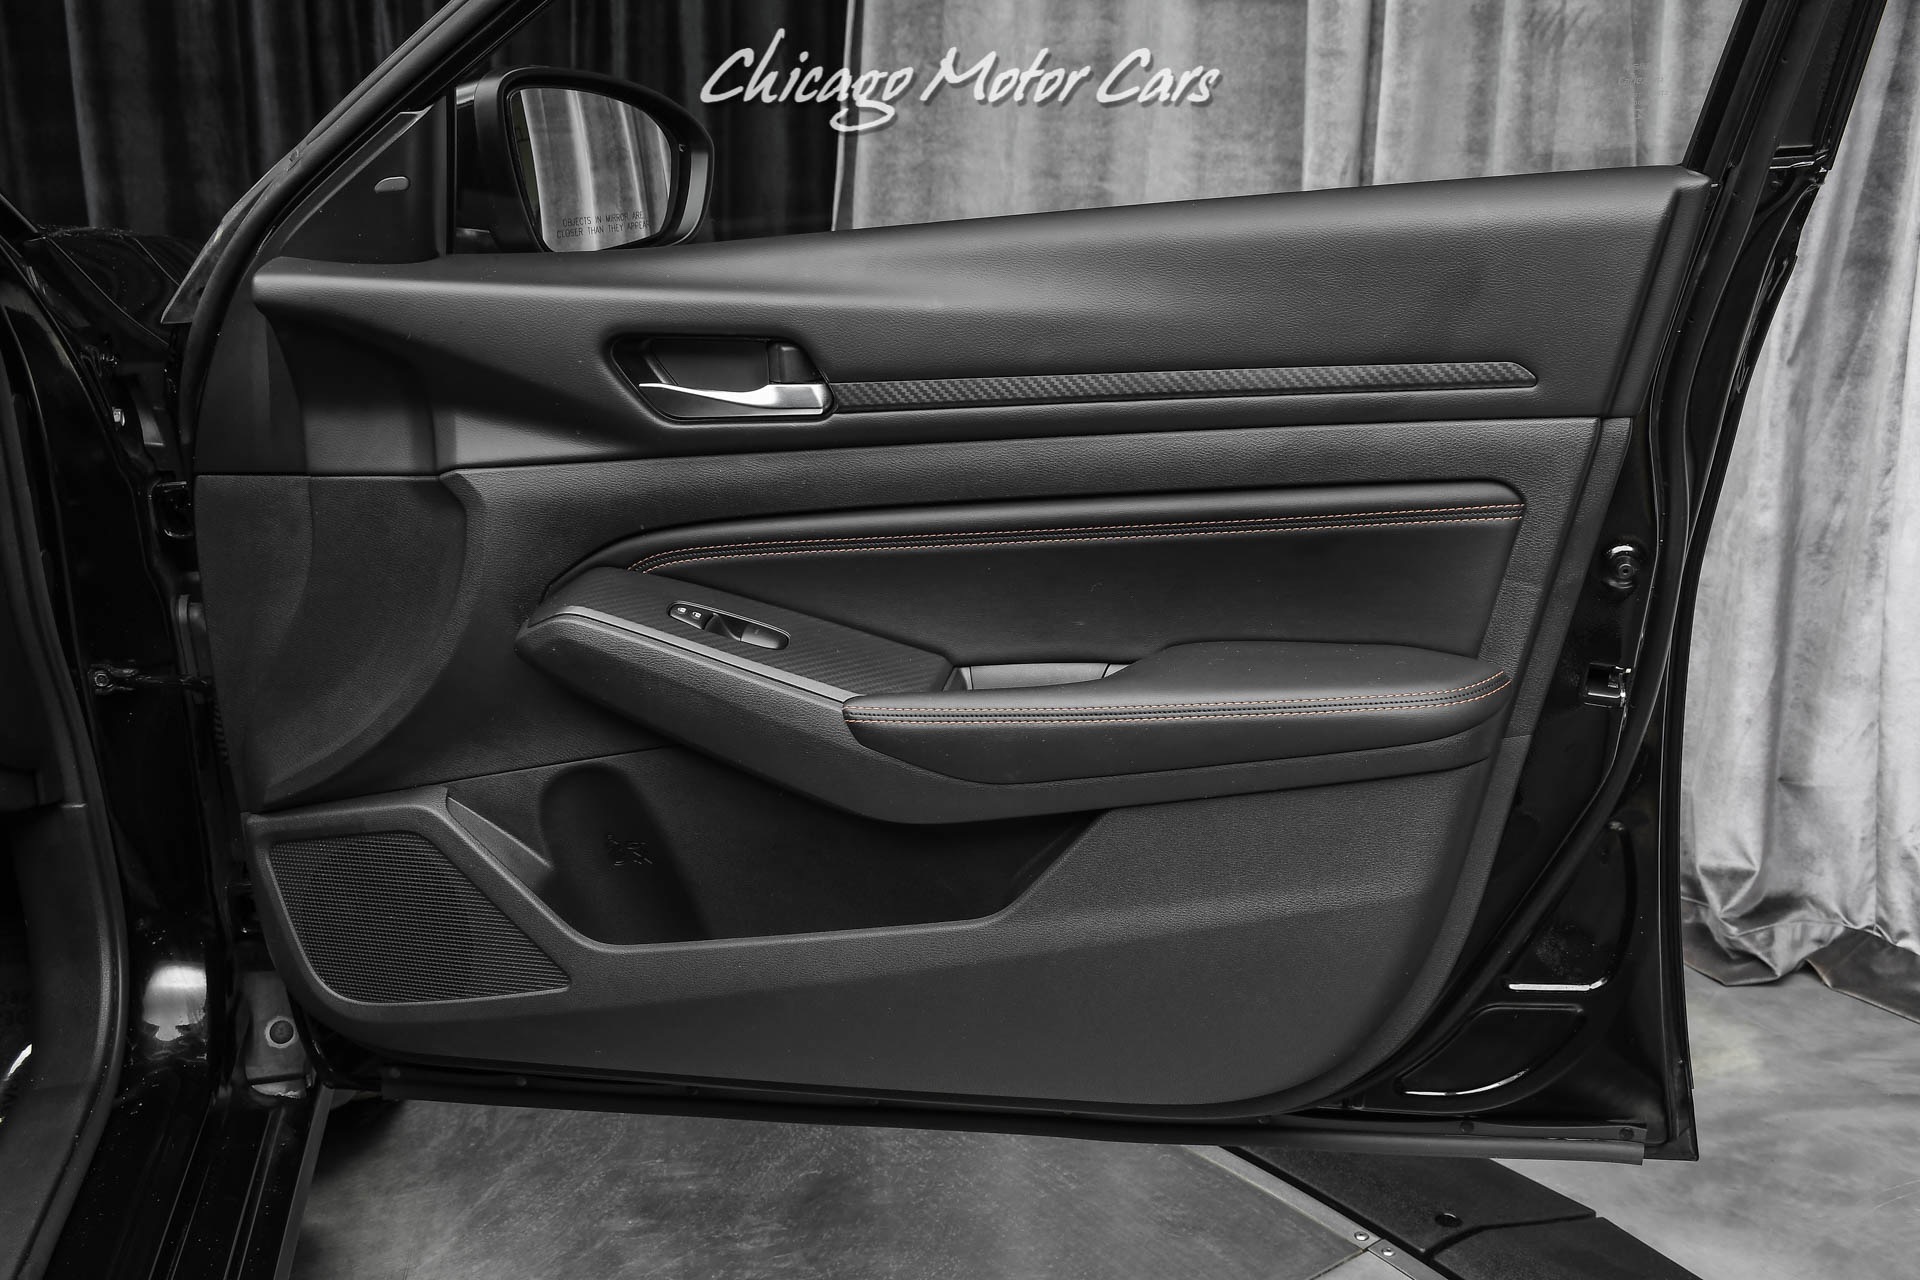 Used-2019-Nissan-Altima-20-SR-31kMSRP-Leather-Heated-Seats-Apple-CarPlay